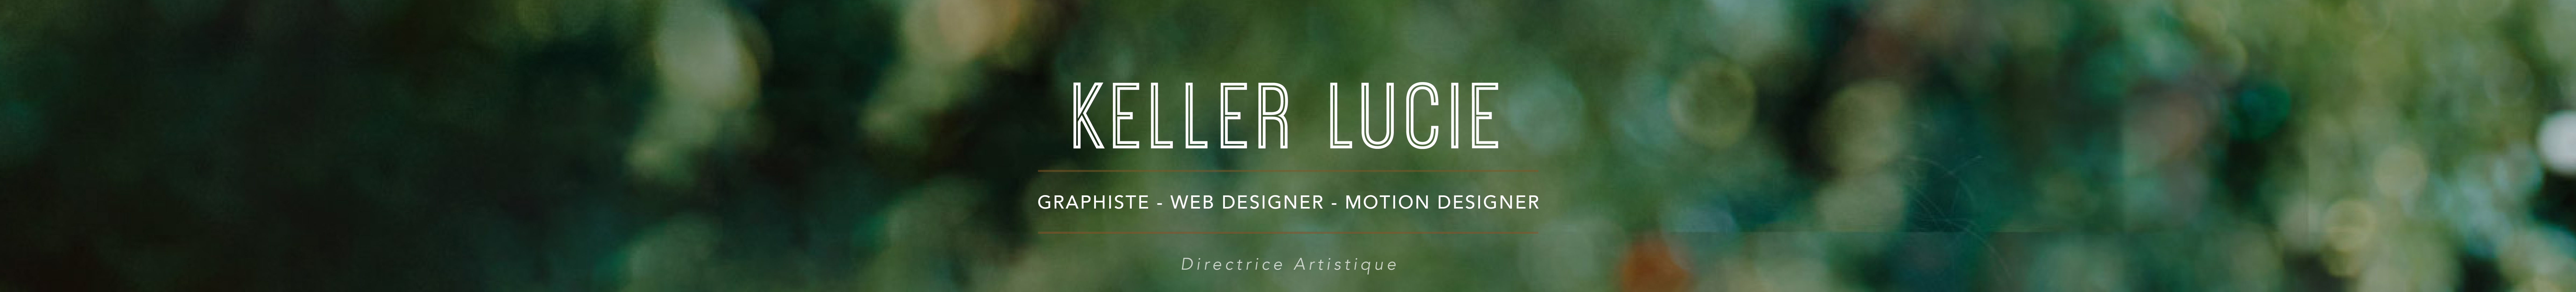 Lucie Keller's profile banner